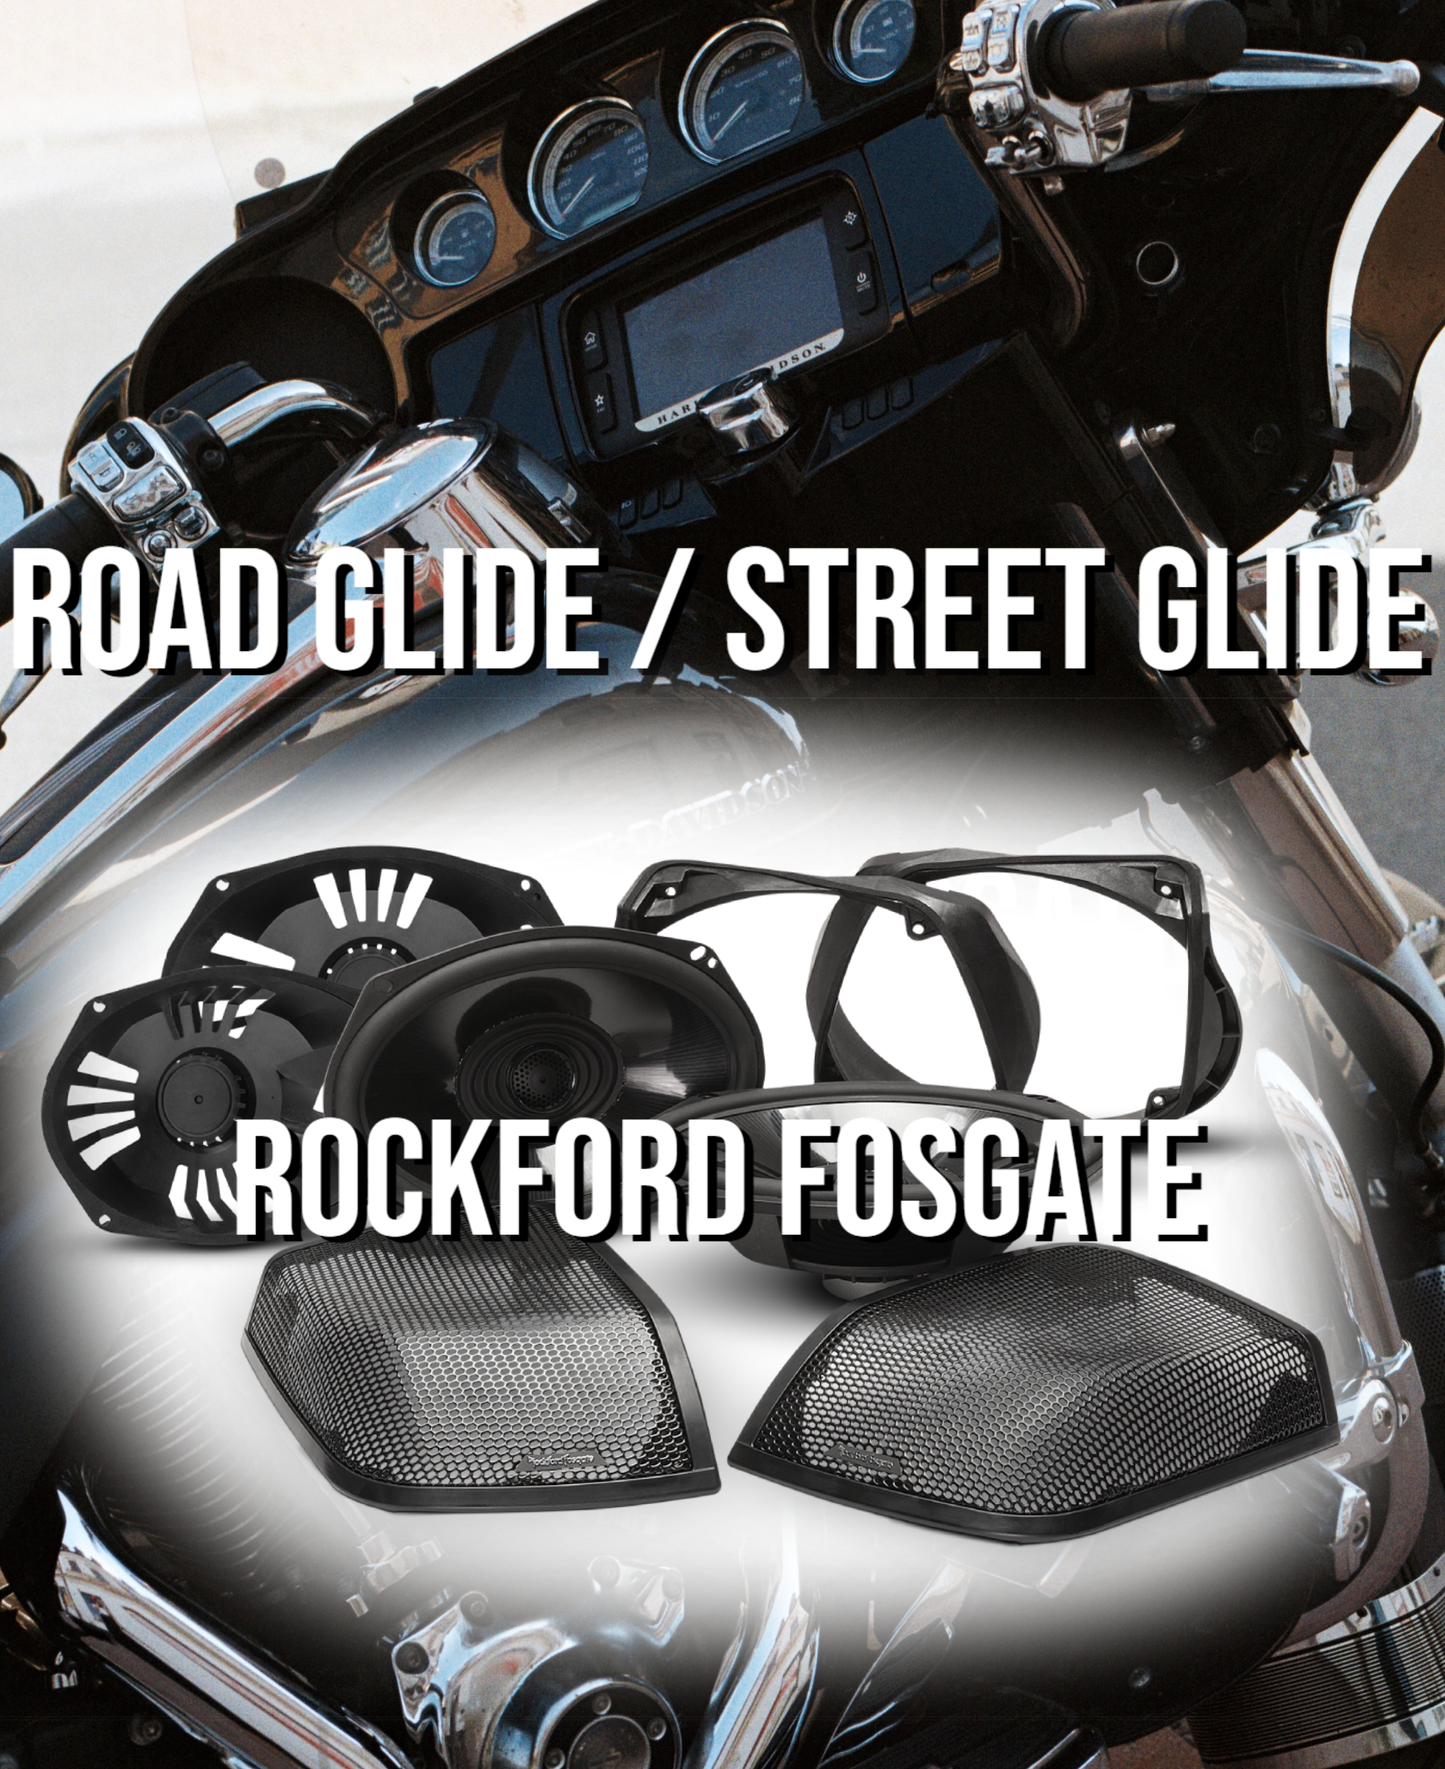 .Road Glide / Street Glide Audio Package (ROCKFORD FOSGATE).